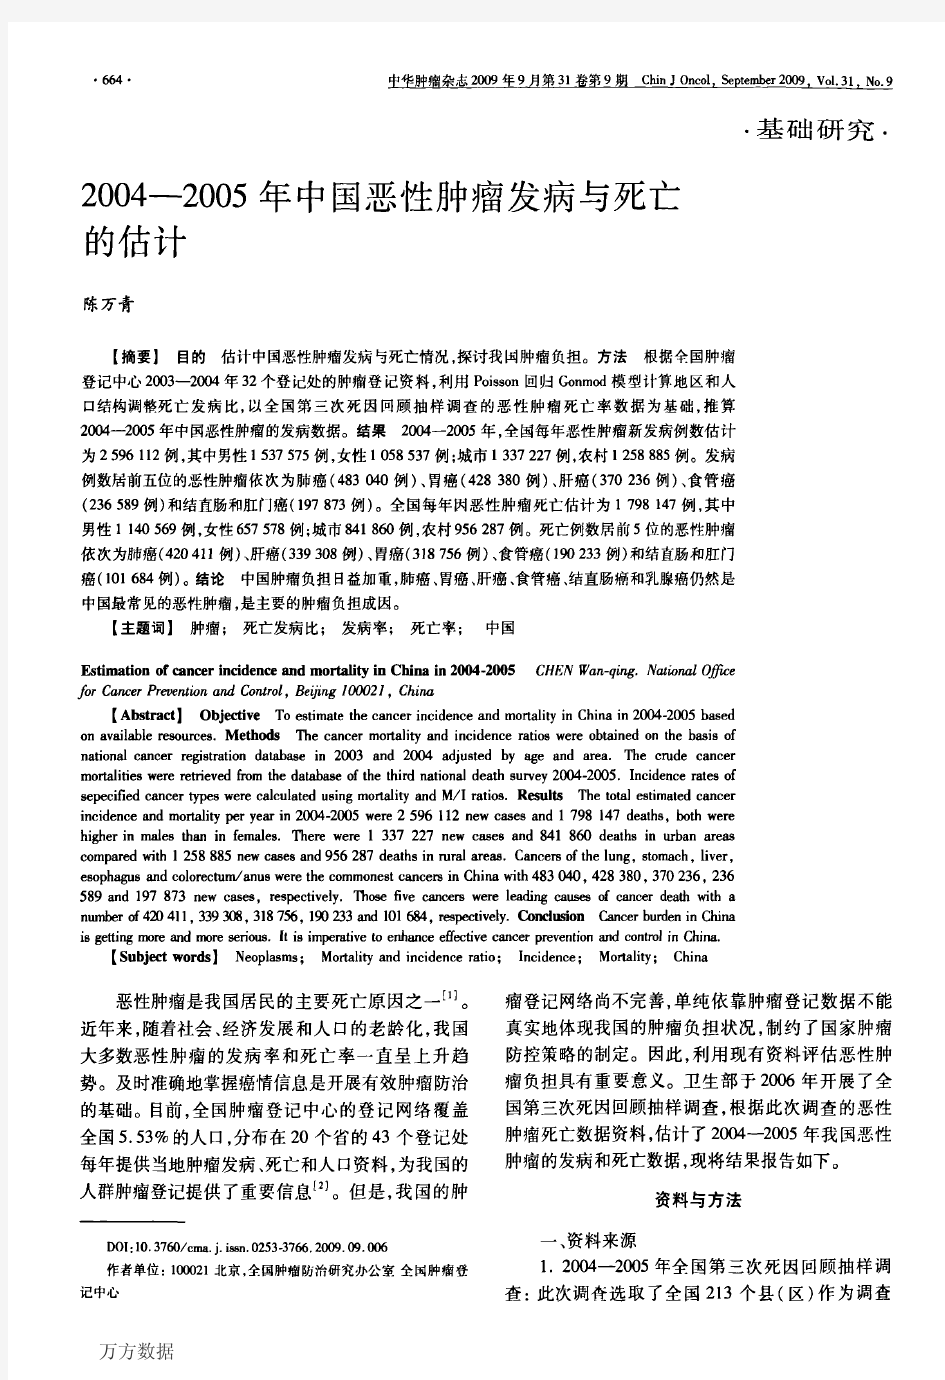 2004-2012年中国恶性肿瘤发病和死亡分析-汇总资料